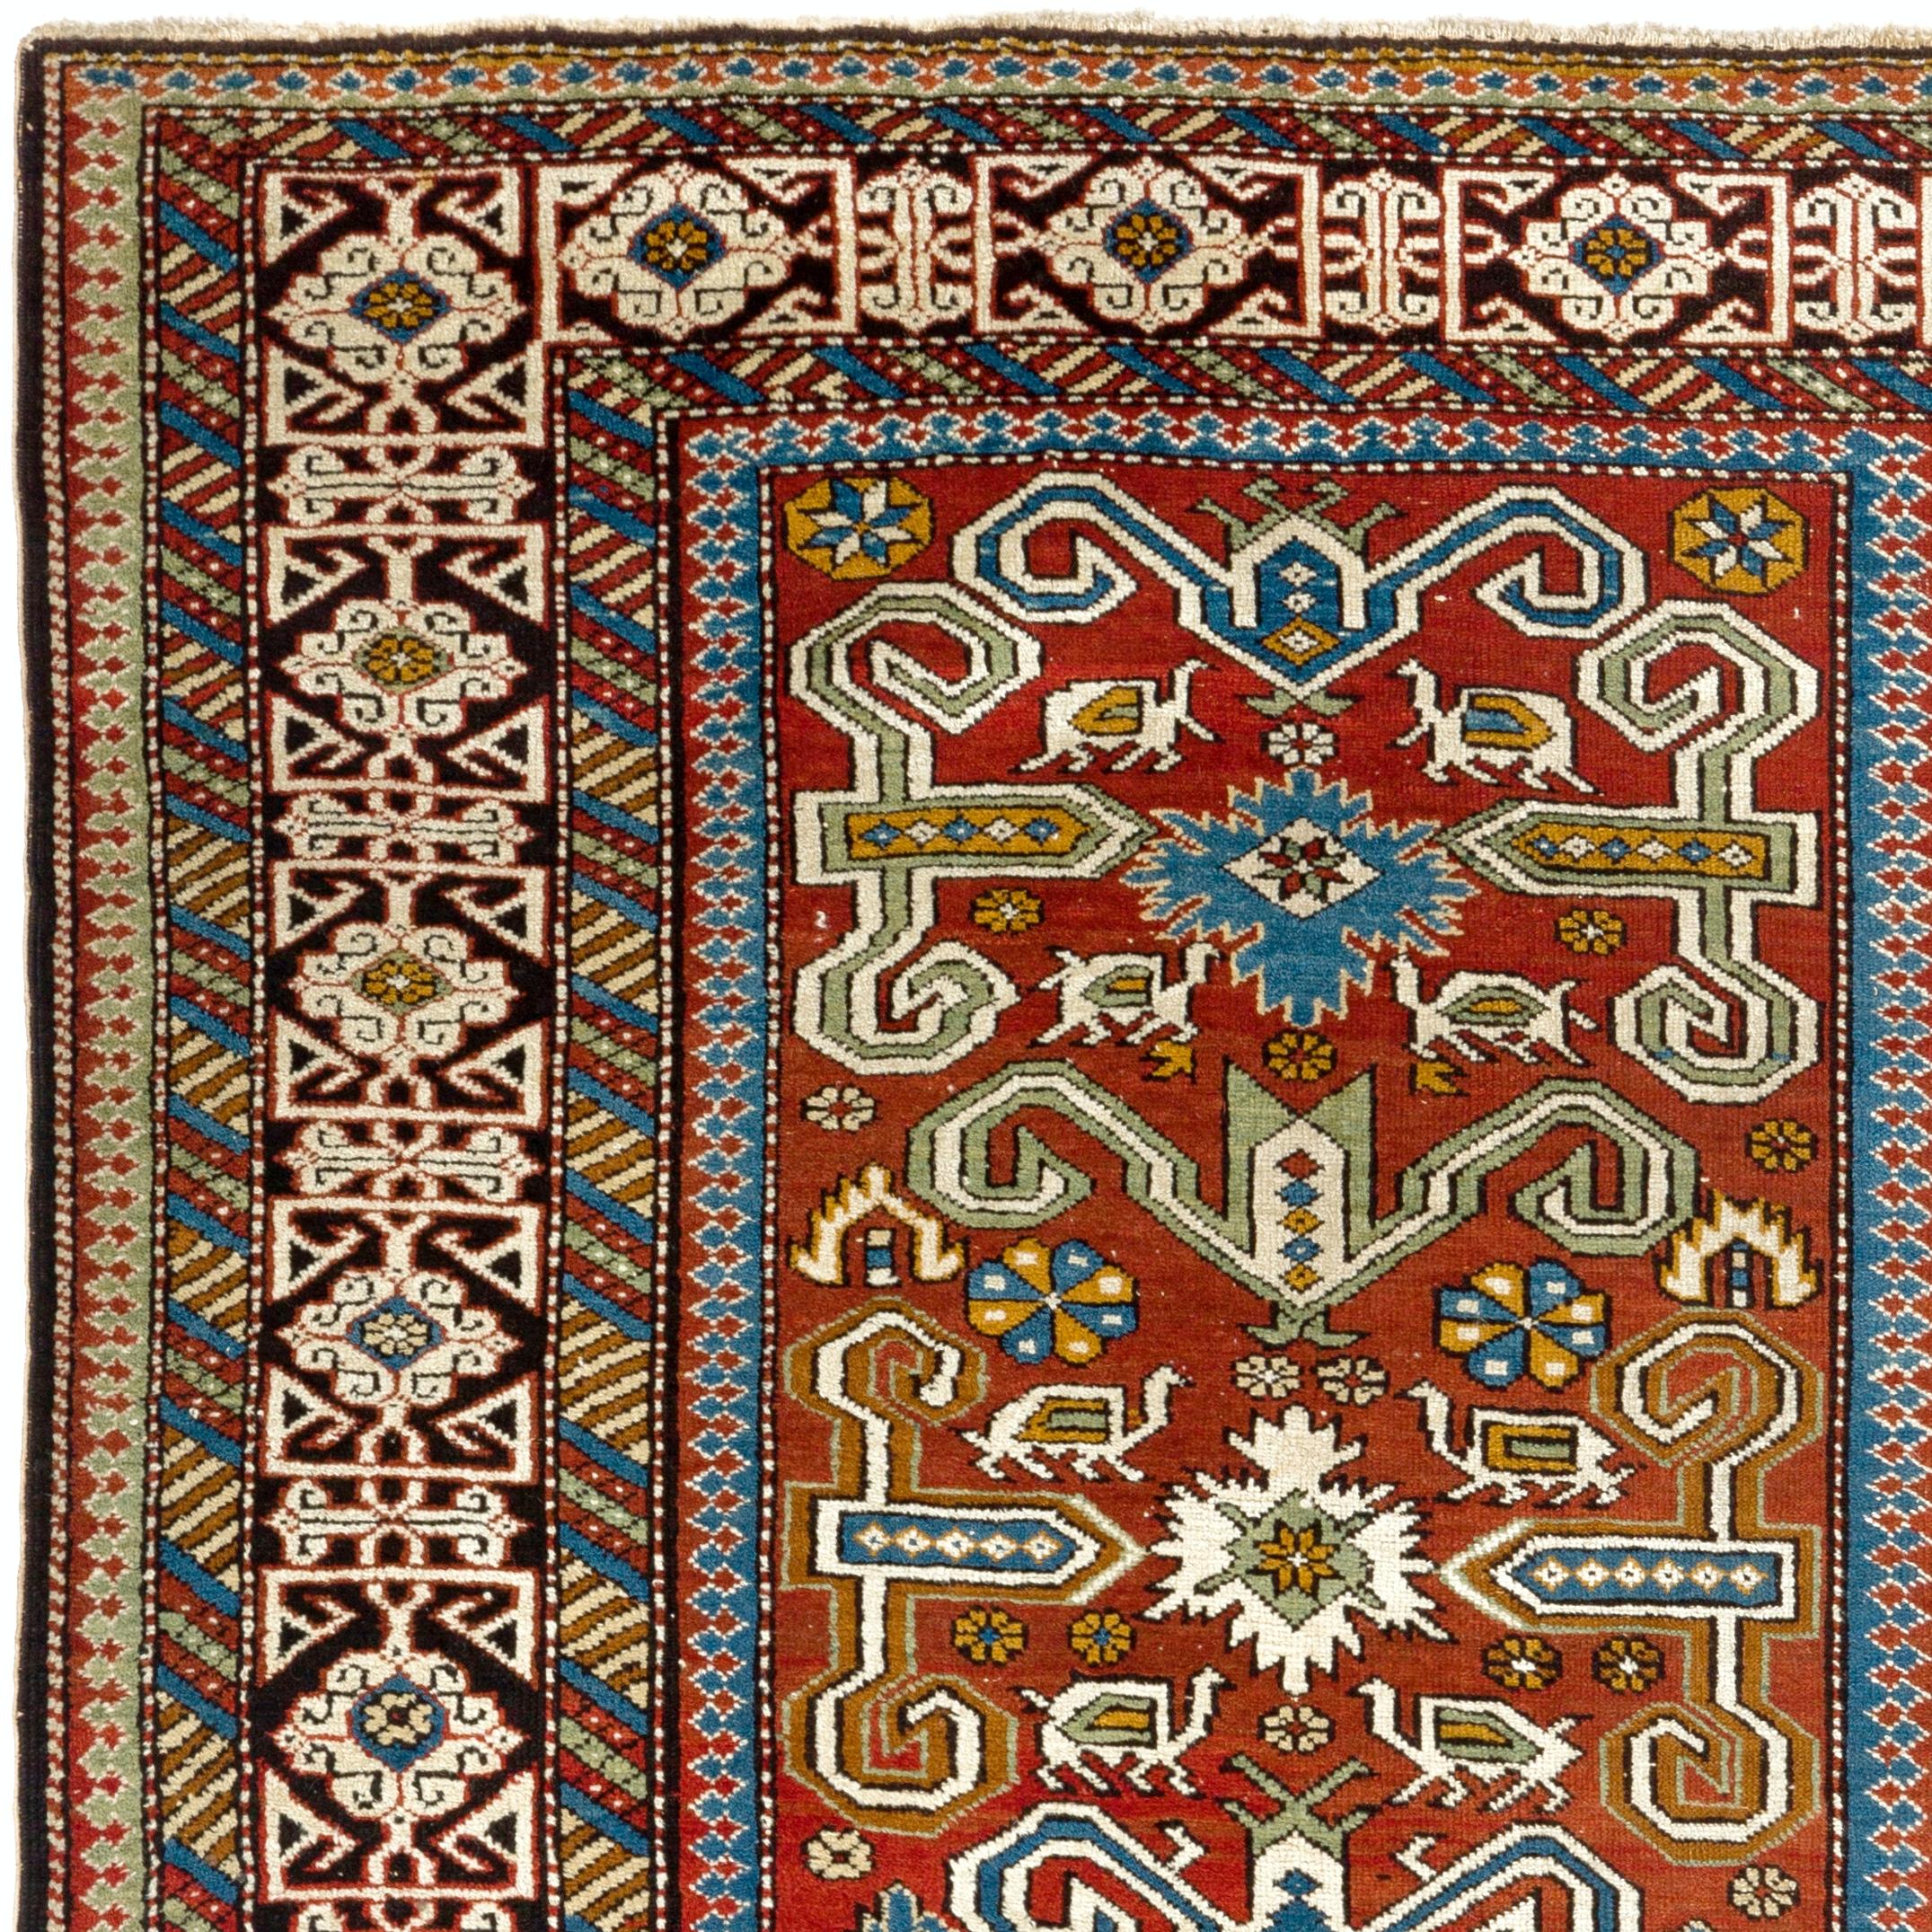 Ancien tapis Perepedil du Nord-Est du Caucase, provenant de la région de Quba en Azerbaïdjan. Design/One classique avec des fleurs, des animaux et de petites étoiles, encadré par une élégante bordure coufique et des bordures mineures colorées.
Poil